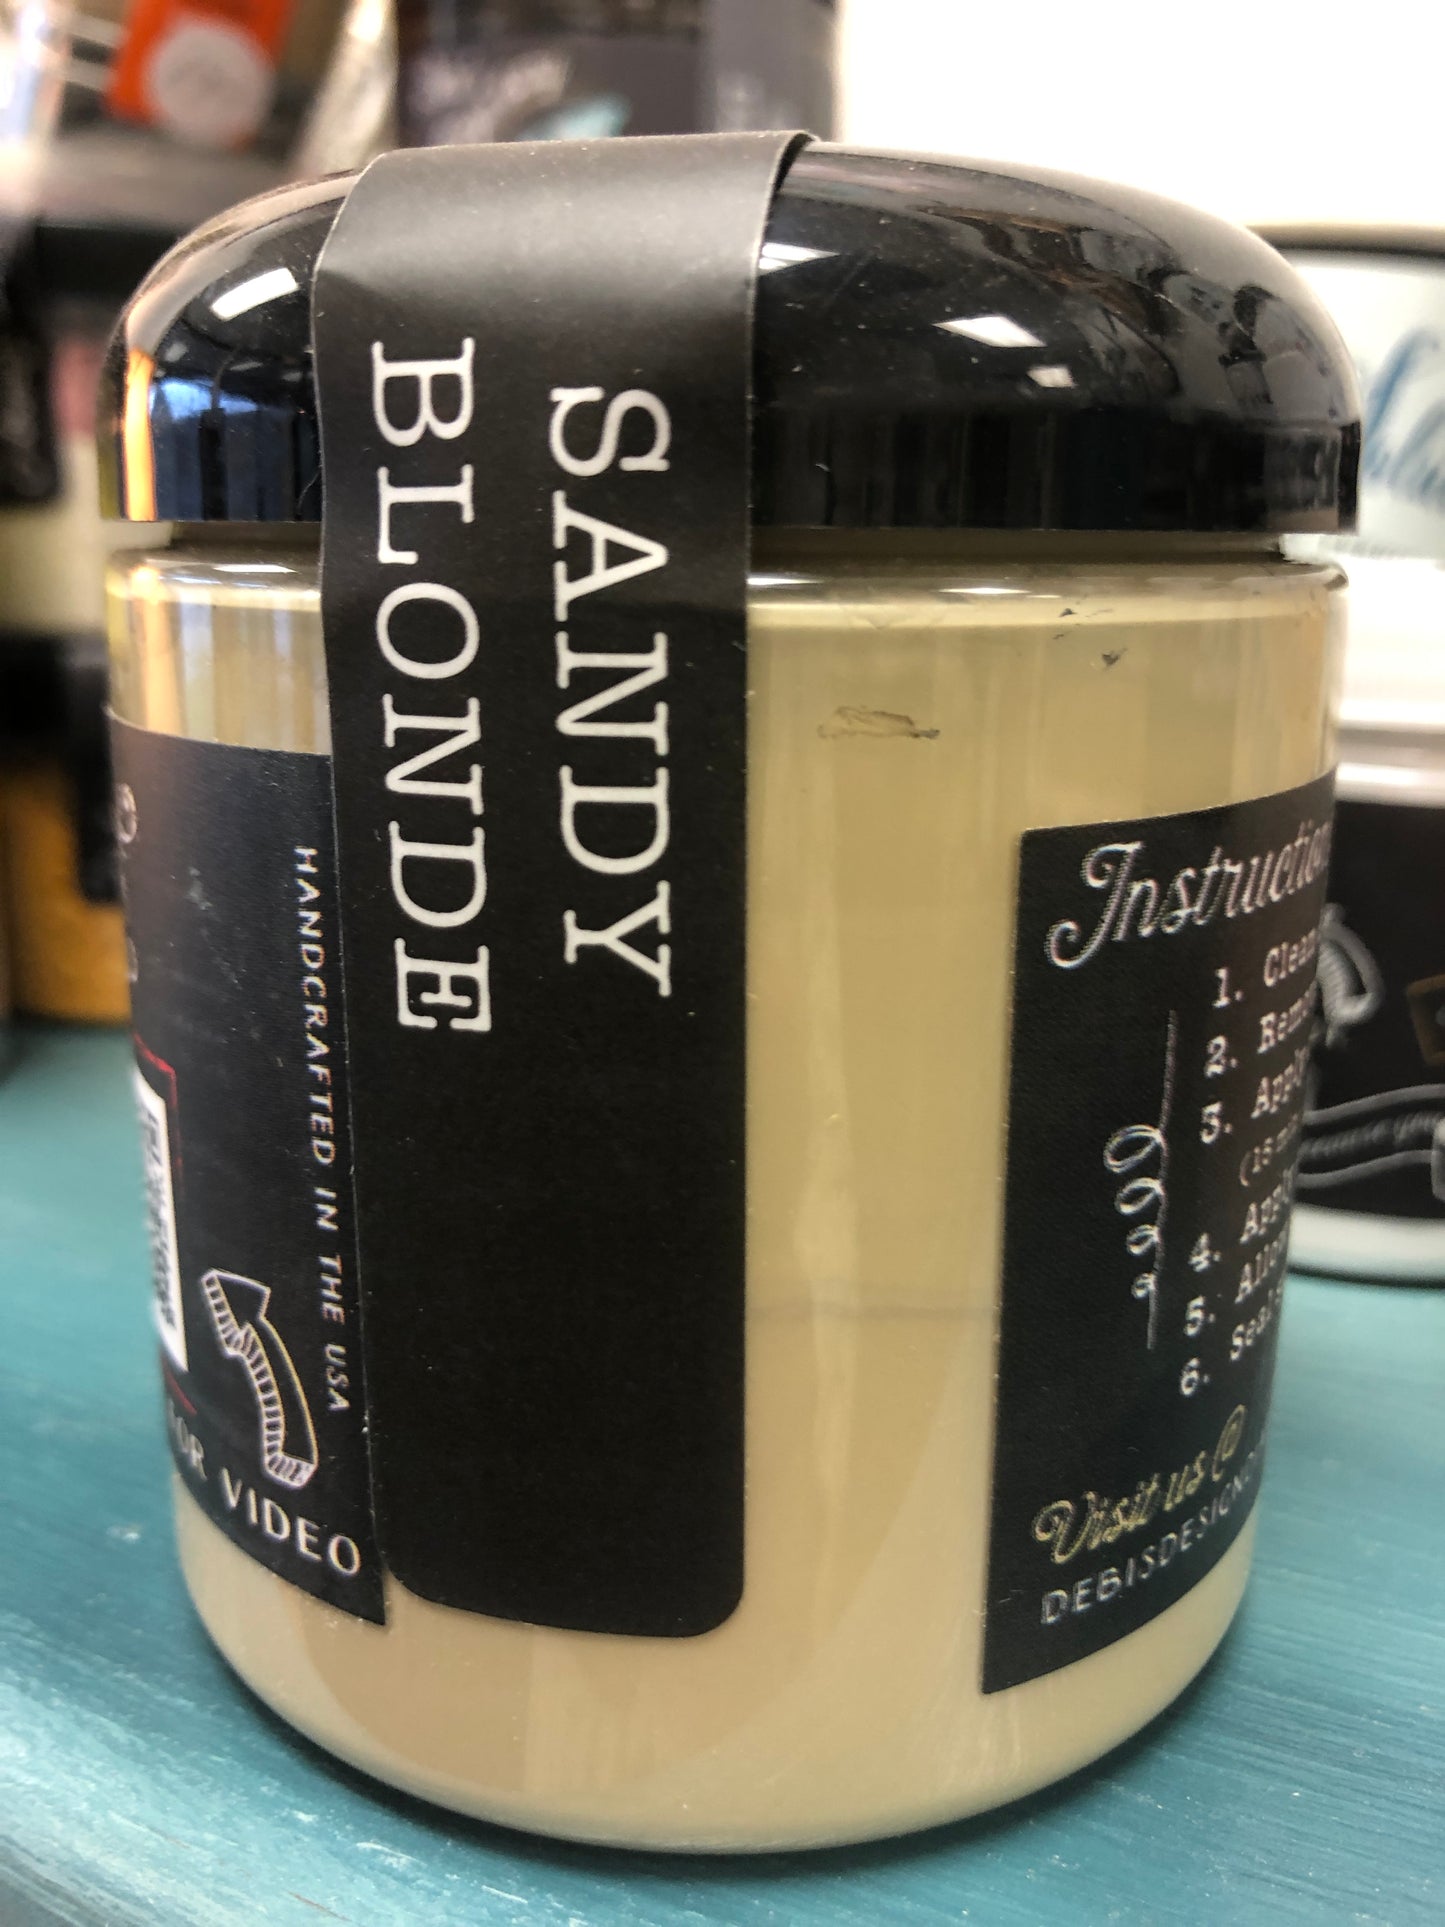 DIY Paint Sandy Blonde Plastic Free Paint, Non Toxic, No VOC's